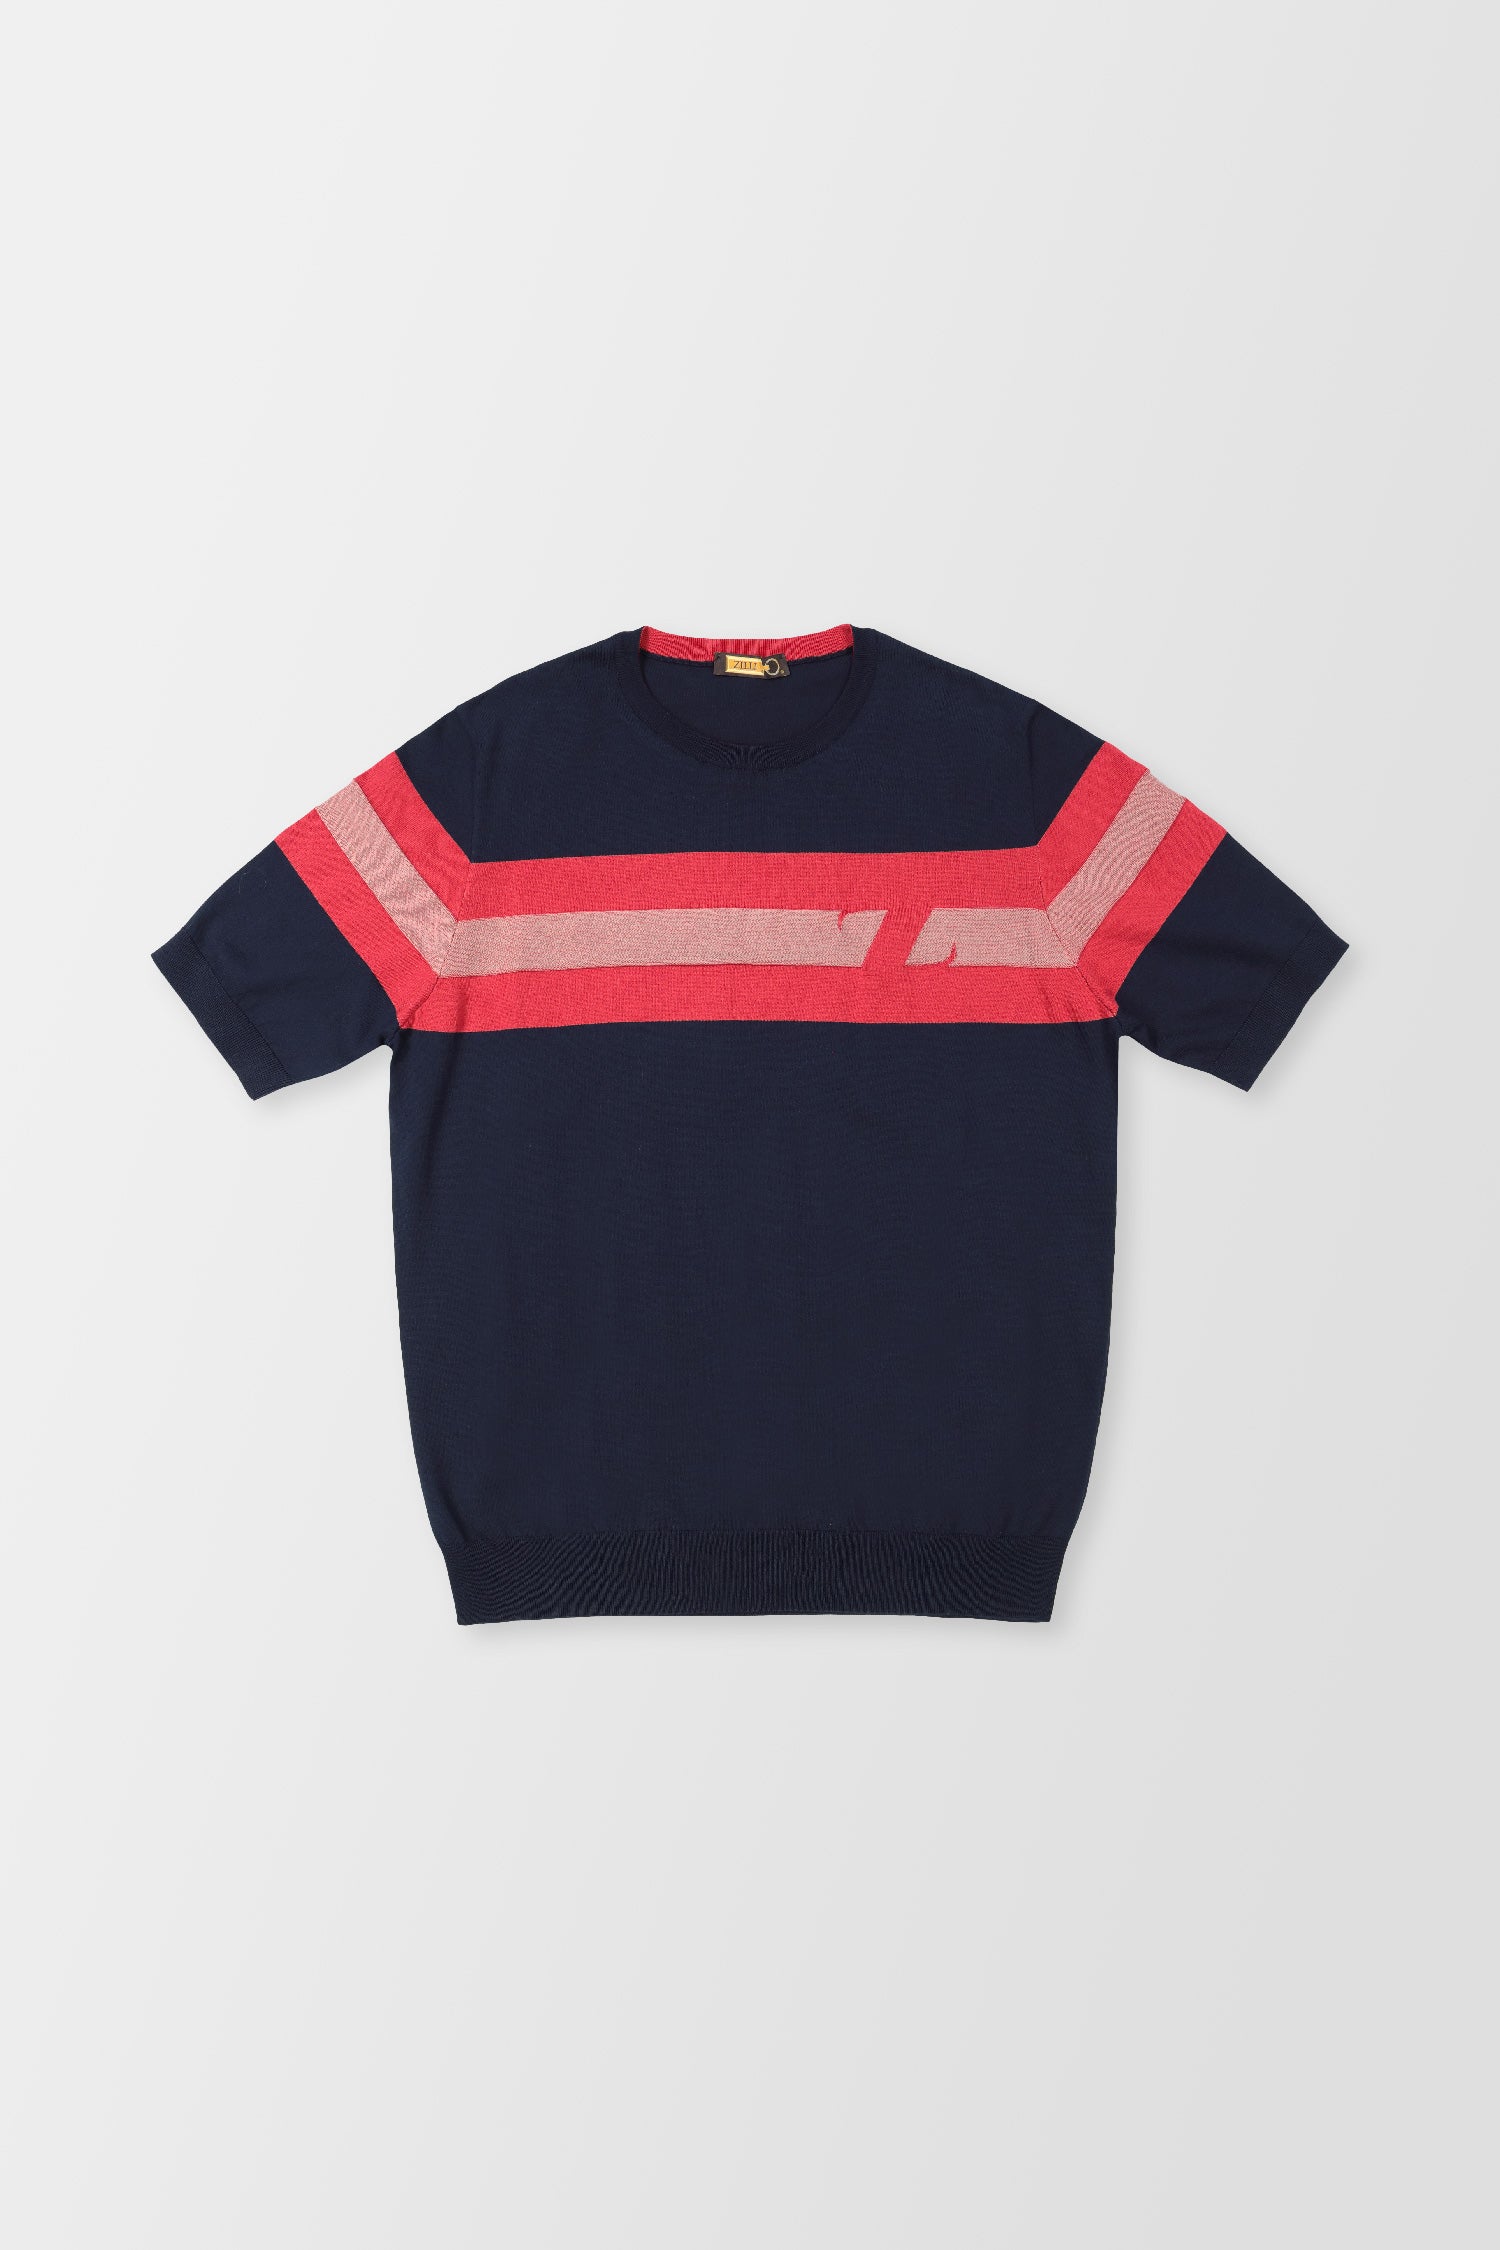 Zilli Navy/Red MC T-Shirt